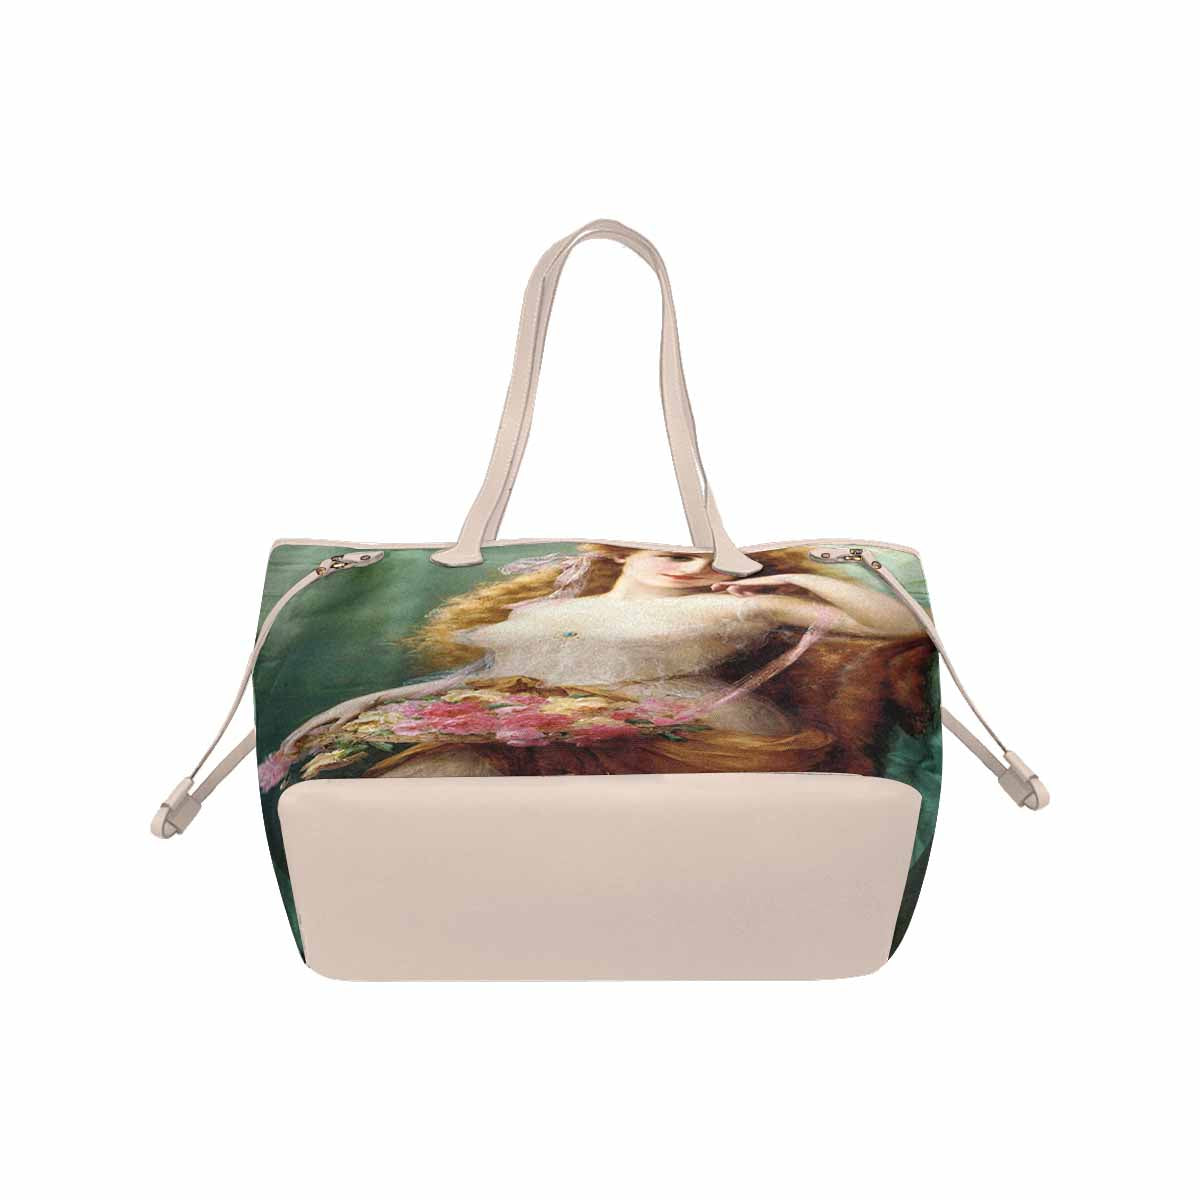 Victorian Lady Design Handbag, Model 1695361, Basket Of Roses, BEIGE/TAN TRIM